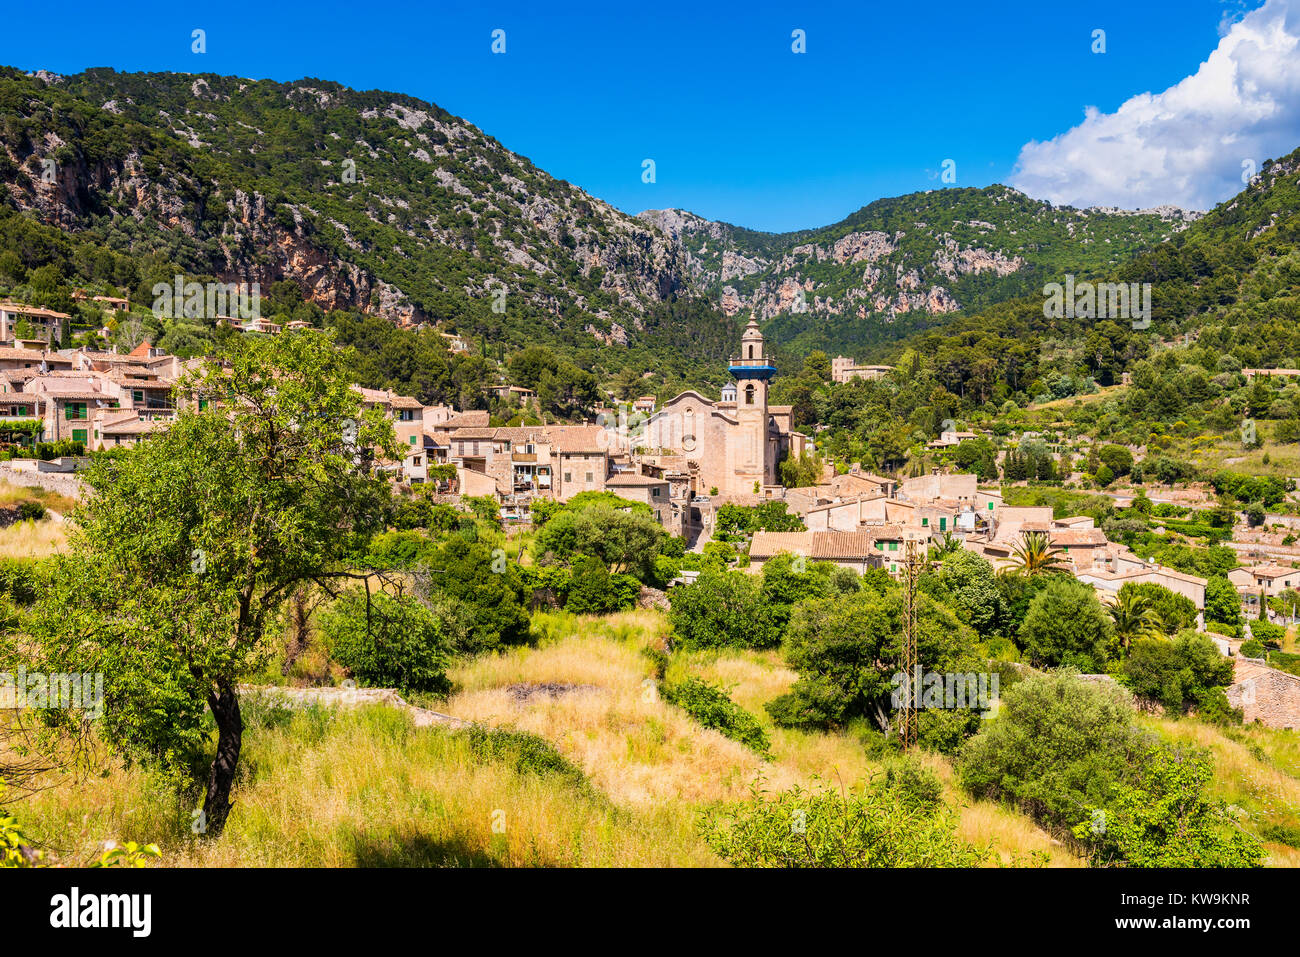 View on the Village of Valldemossa Mallorca Stock Photo